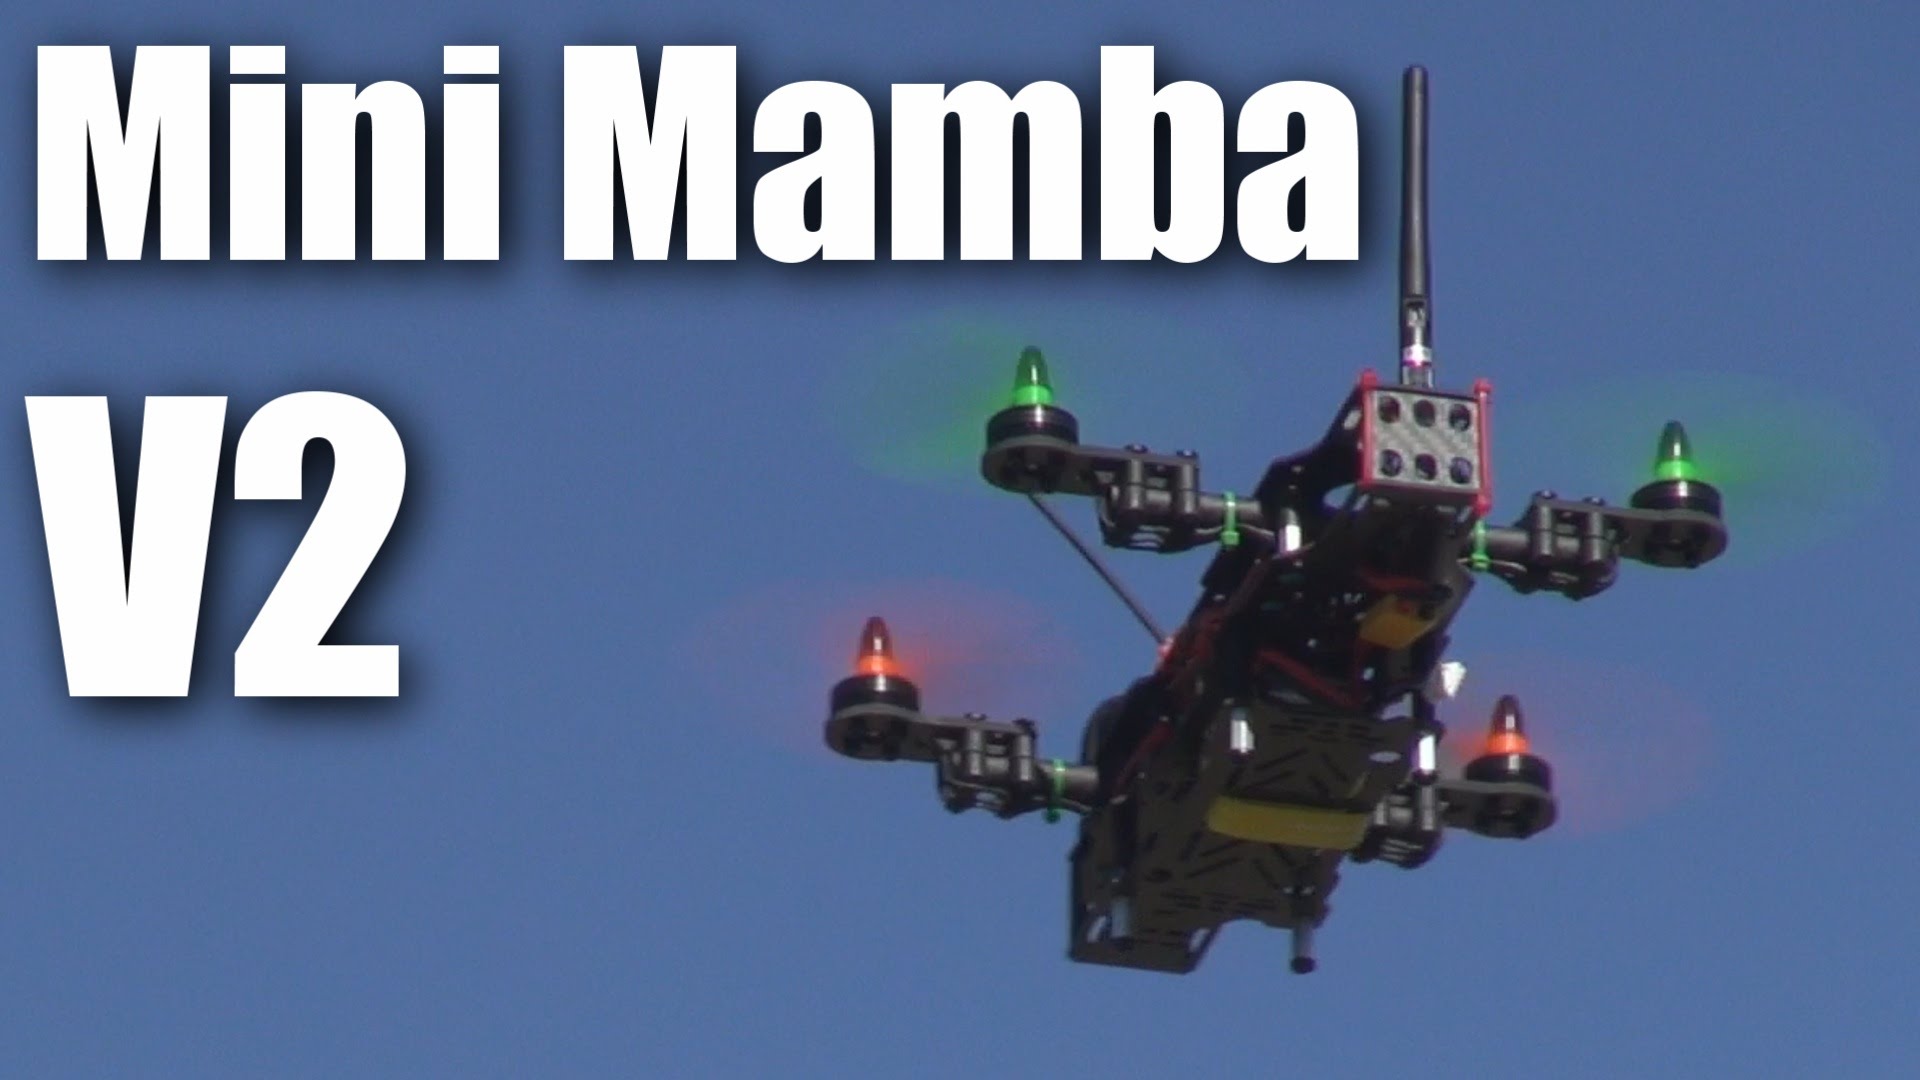 Mini Mamba V2 mini quadcopter review (part 1)